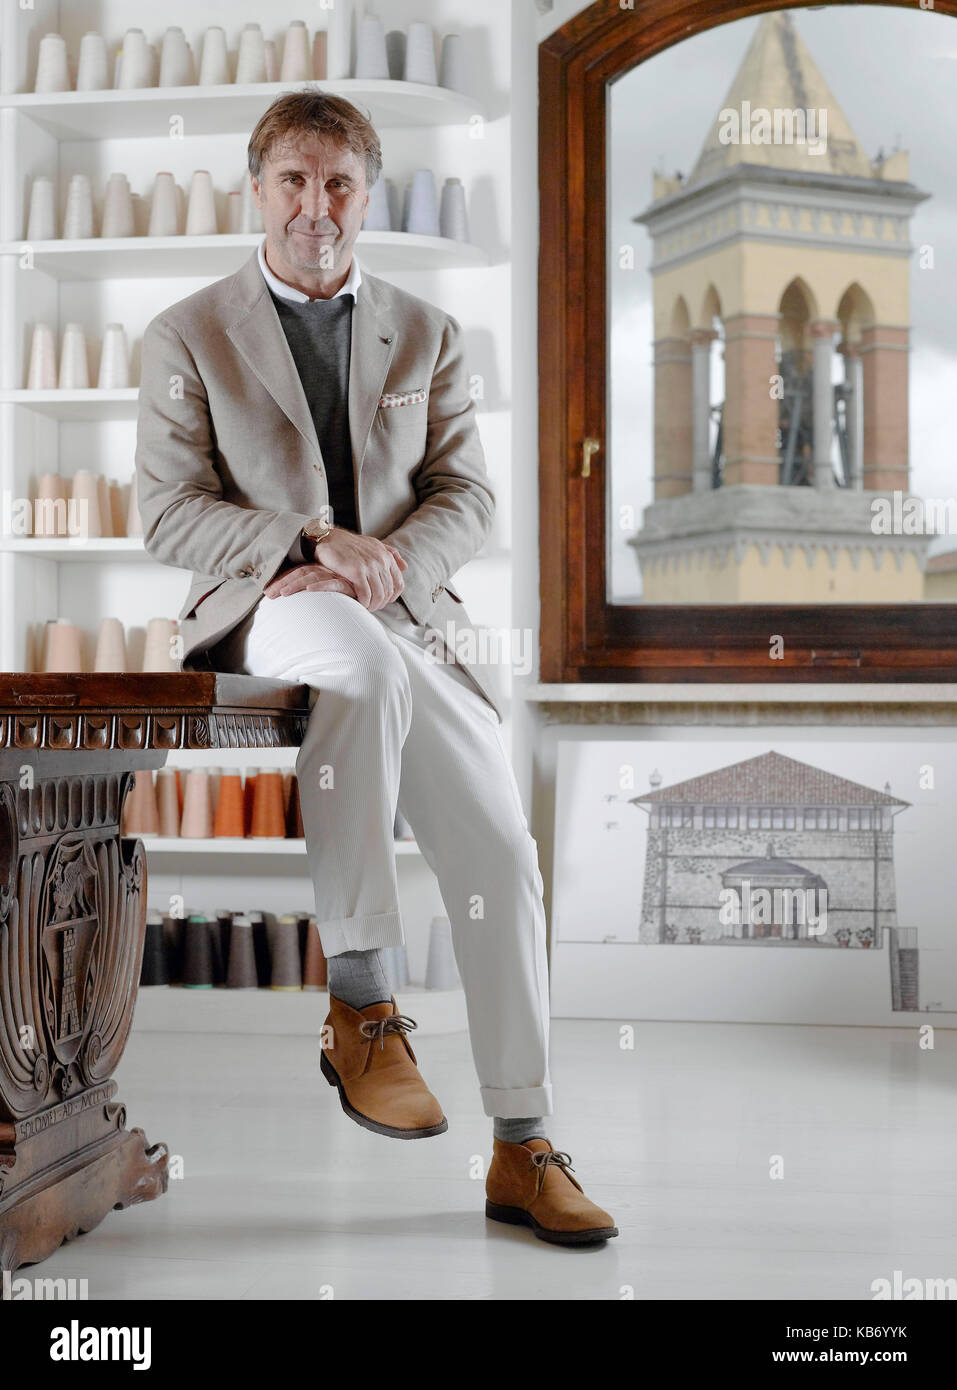 Brunello Cucinelli Solomeo Suite and Sartoria Solomeo Italian Suits – Robb  Report